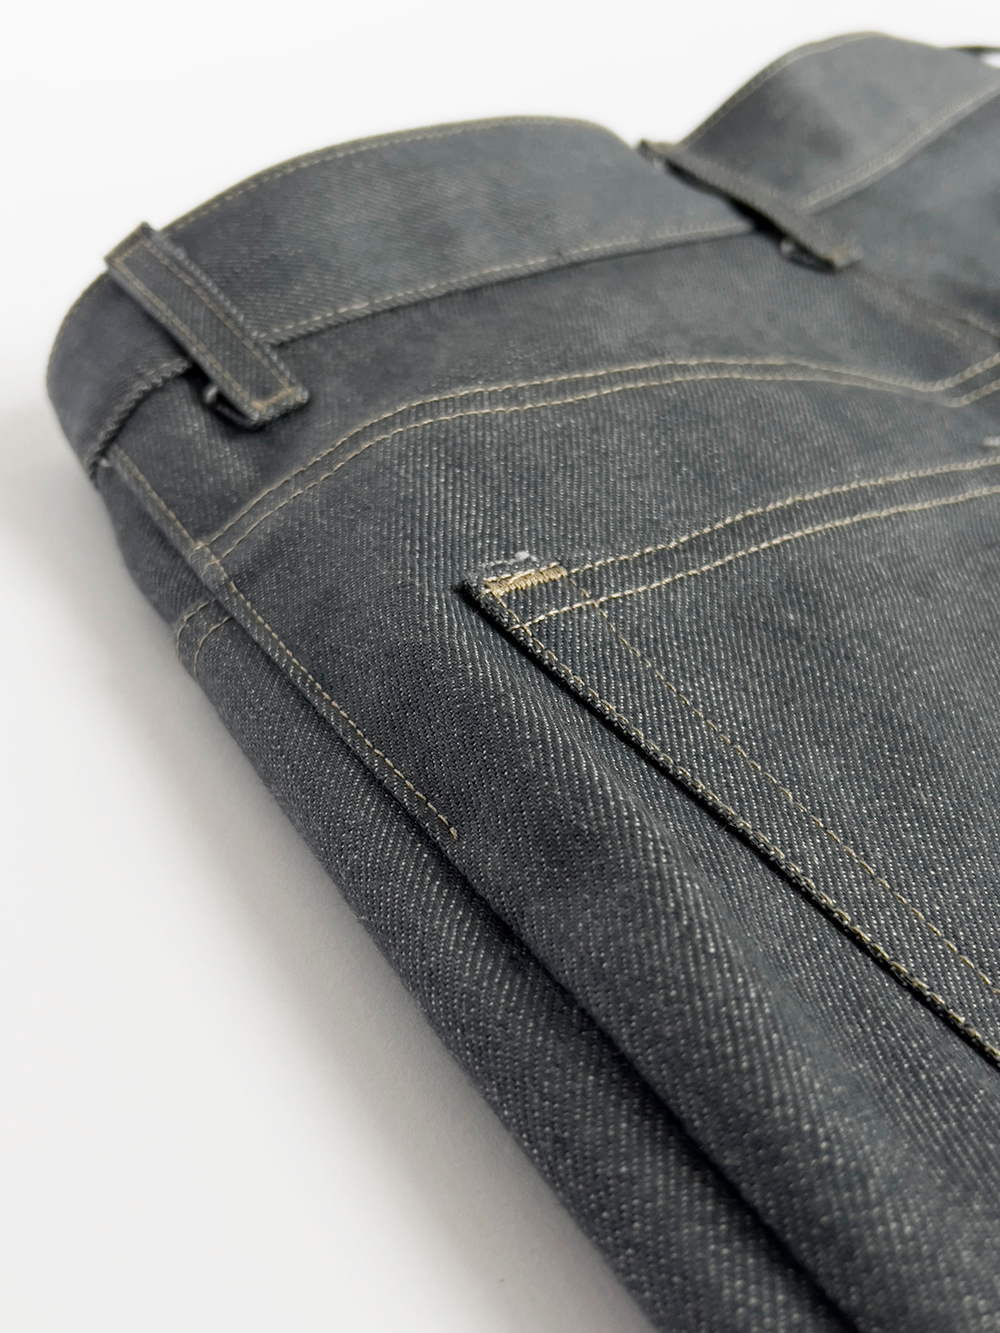 Merchant & Mills Heroine jeans made in grey Japanese selvedge denim ...